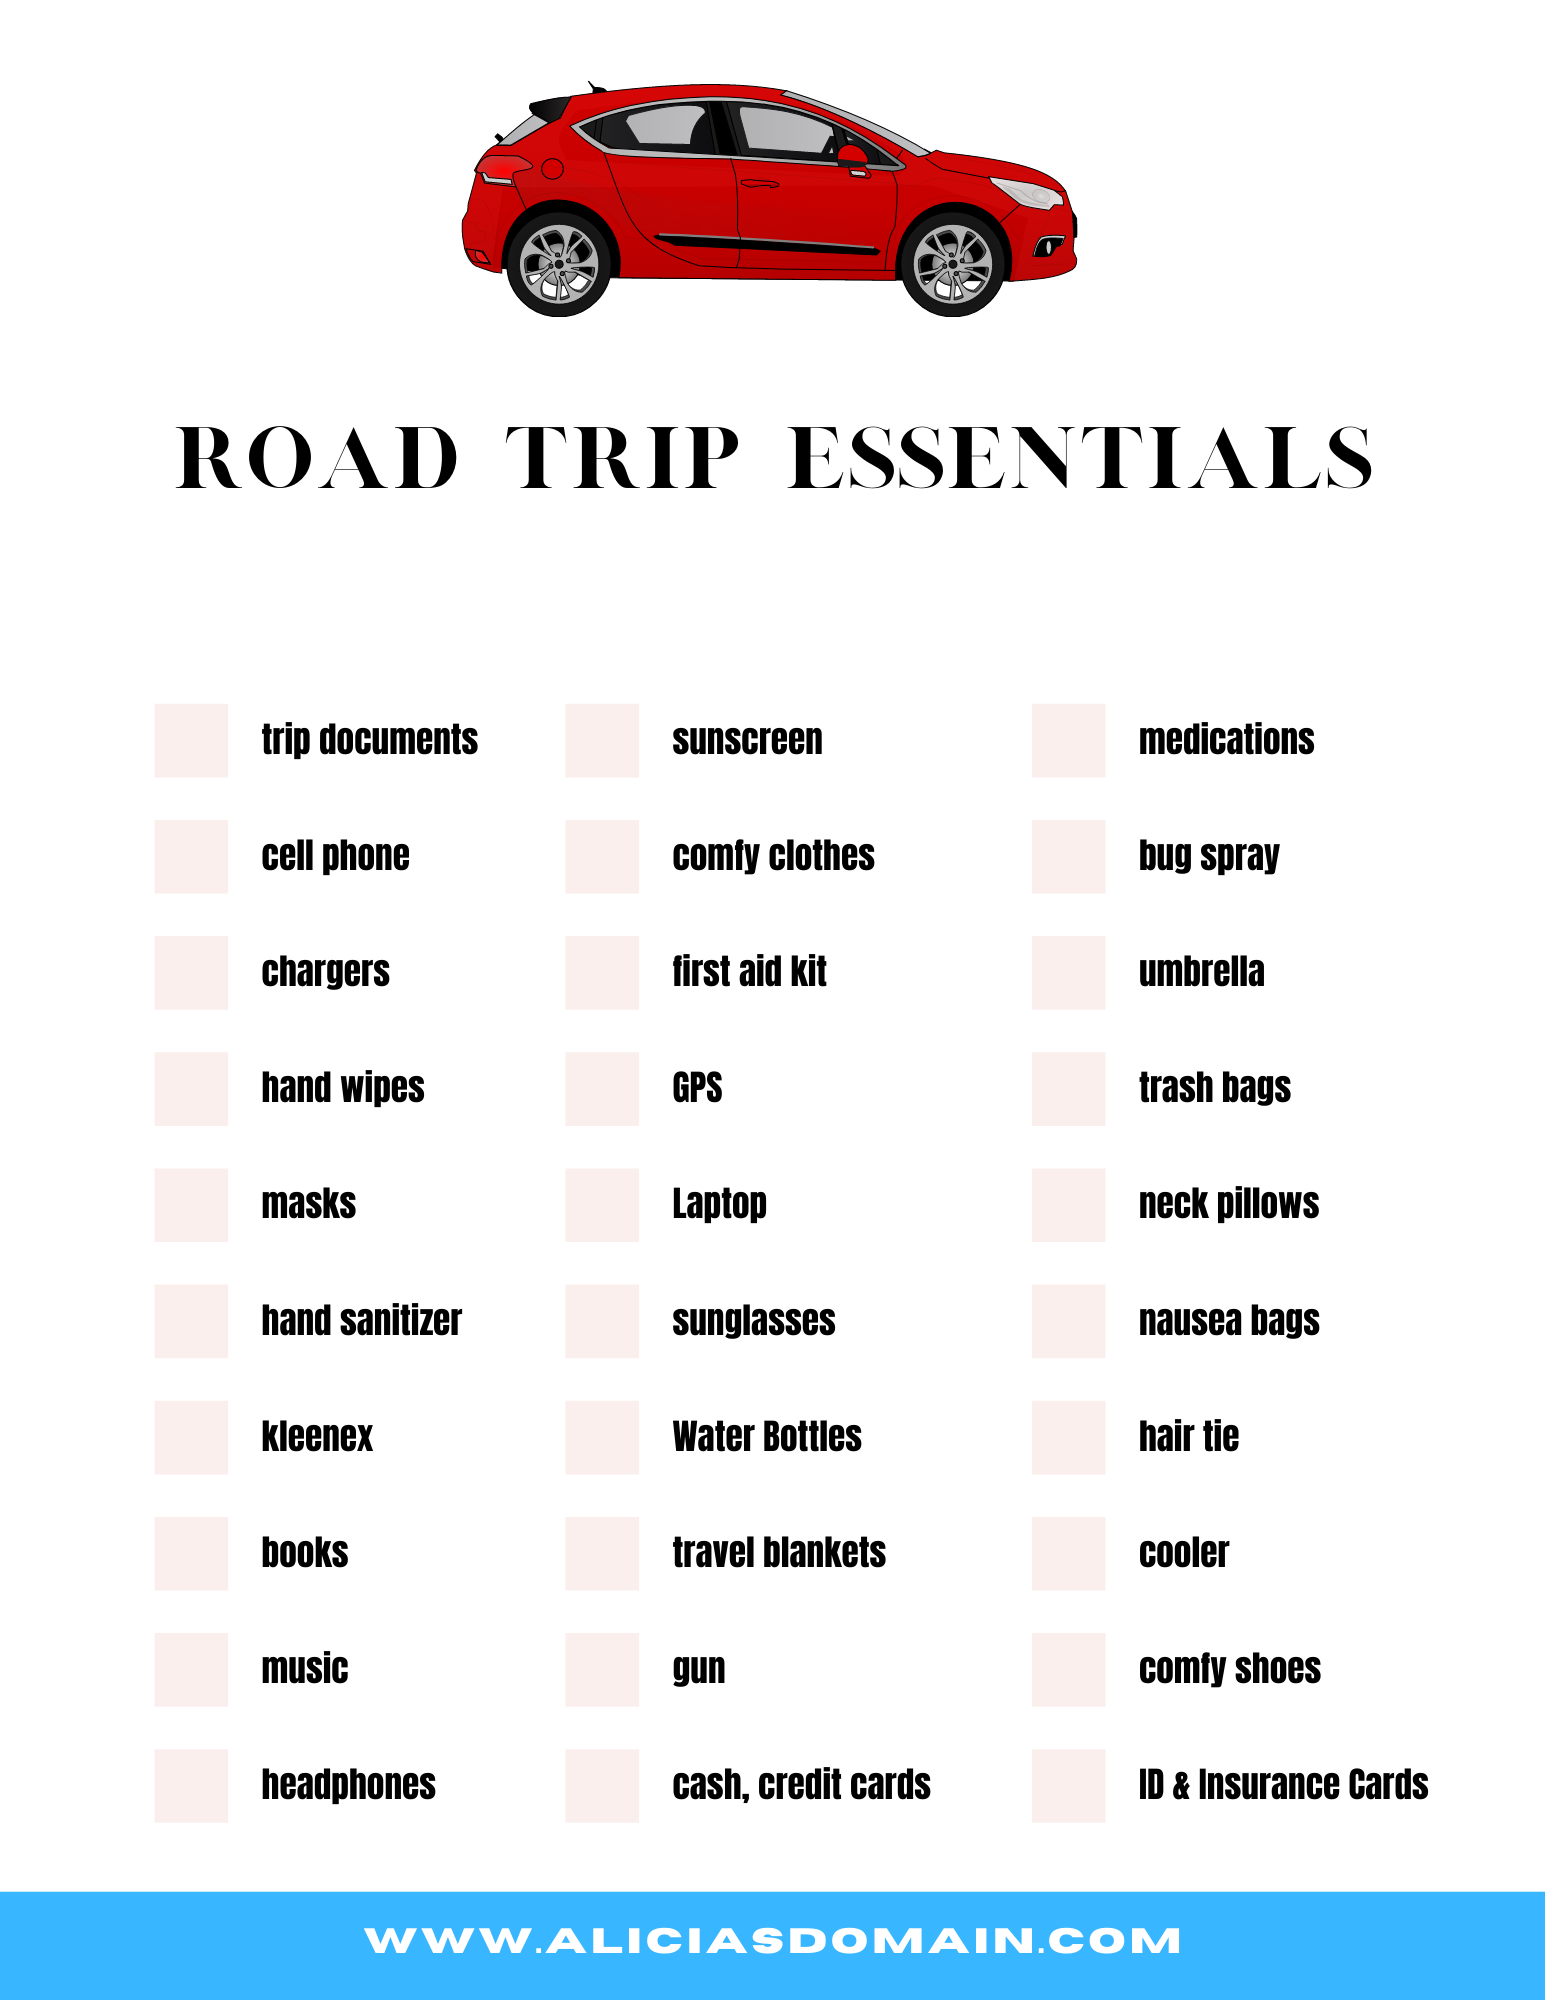 https://www.aliciasdomain.com/wp-content/uploads/2021/02/road-trip-essentials-2.png